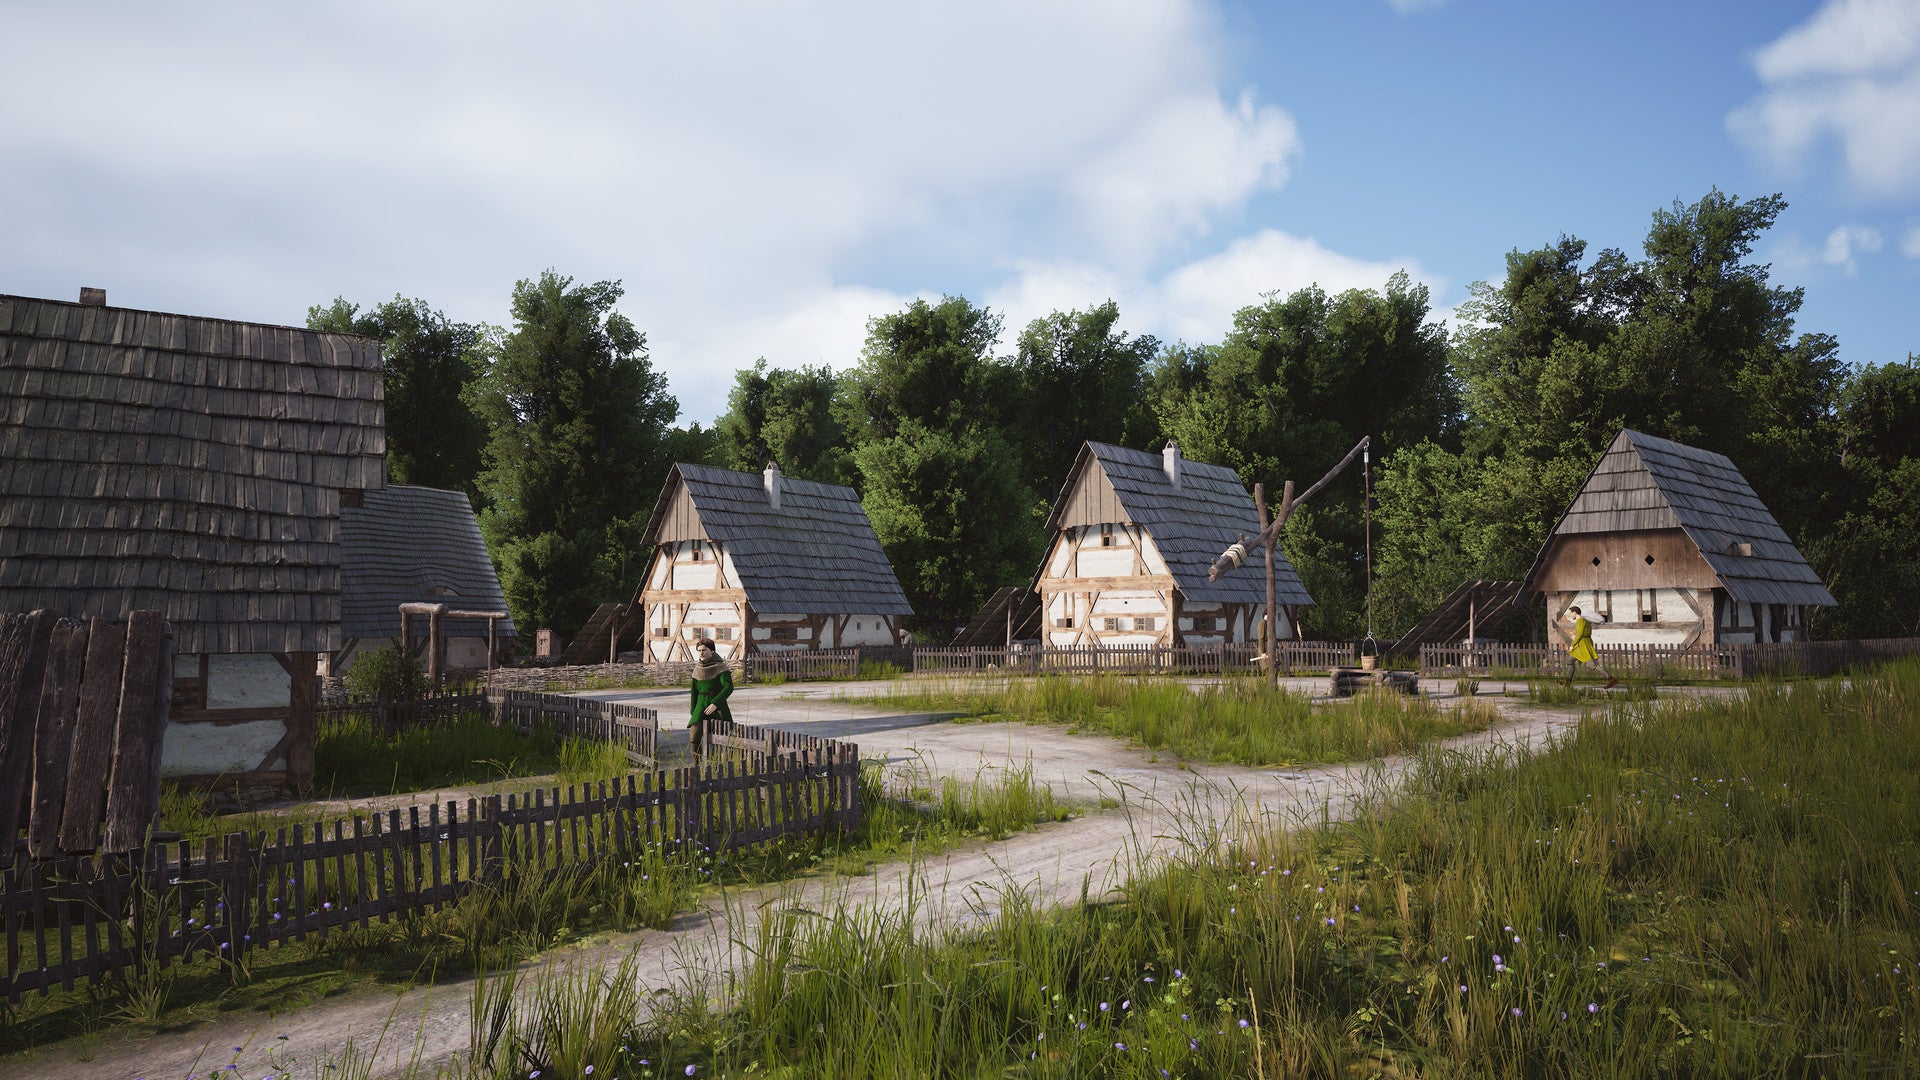 Un ensemble de maisons médiévales en paille et torchis se tient dans une campagne verdoyante avec un ciel bleu mais nuageux.